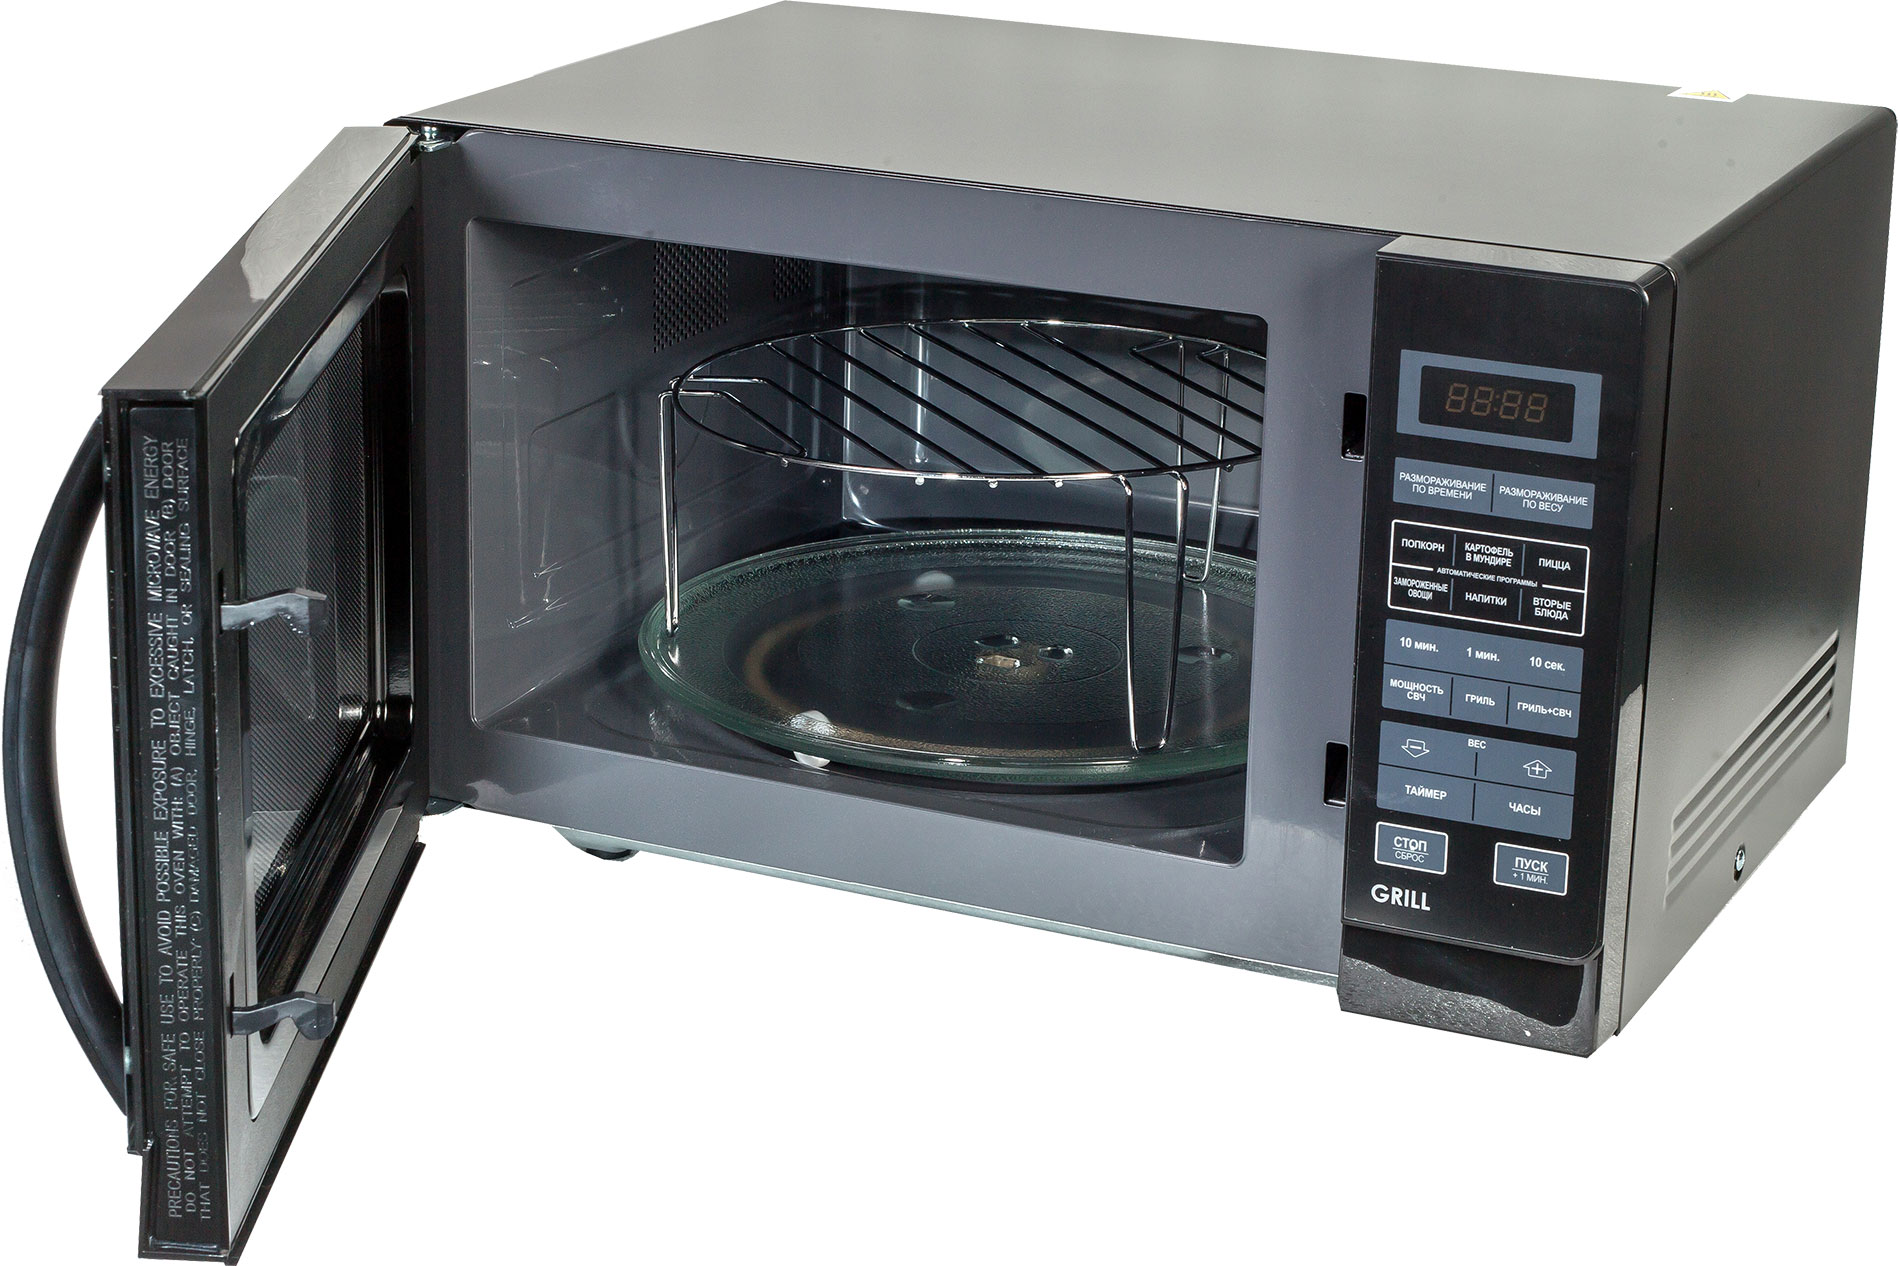 Модель свч. Микроволновая печь Sharp r-6852rw. Sharp r-2000. СВЧ Шарп с грилем и конвекцией. Микроволновая печь Шарп с грилем и конвекцией.